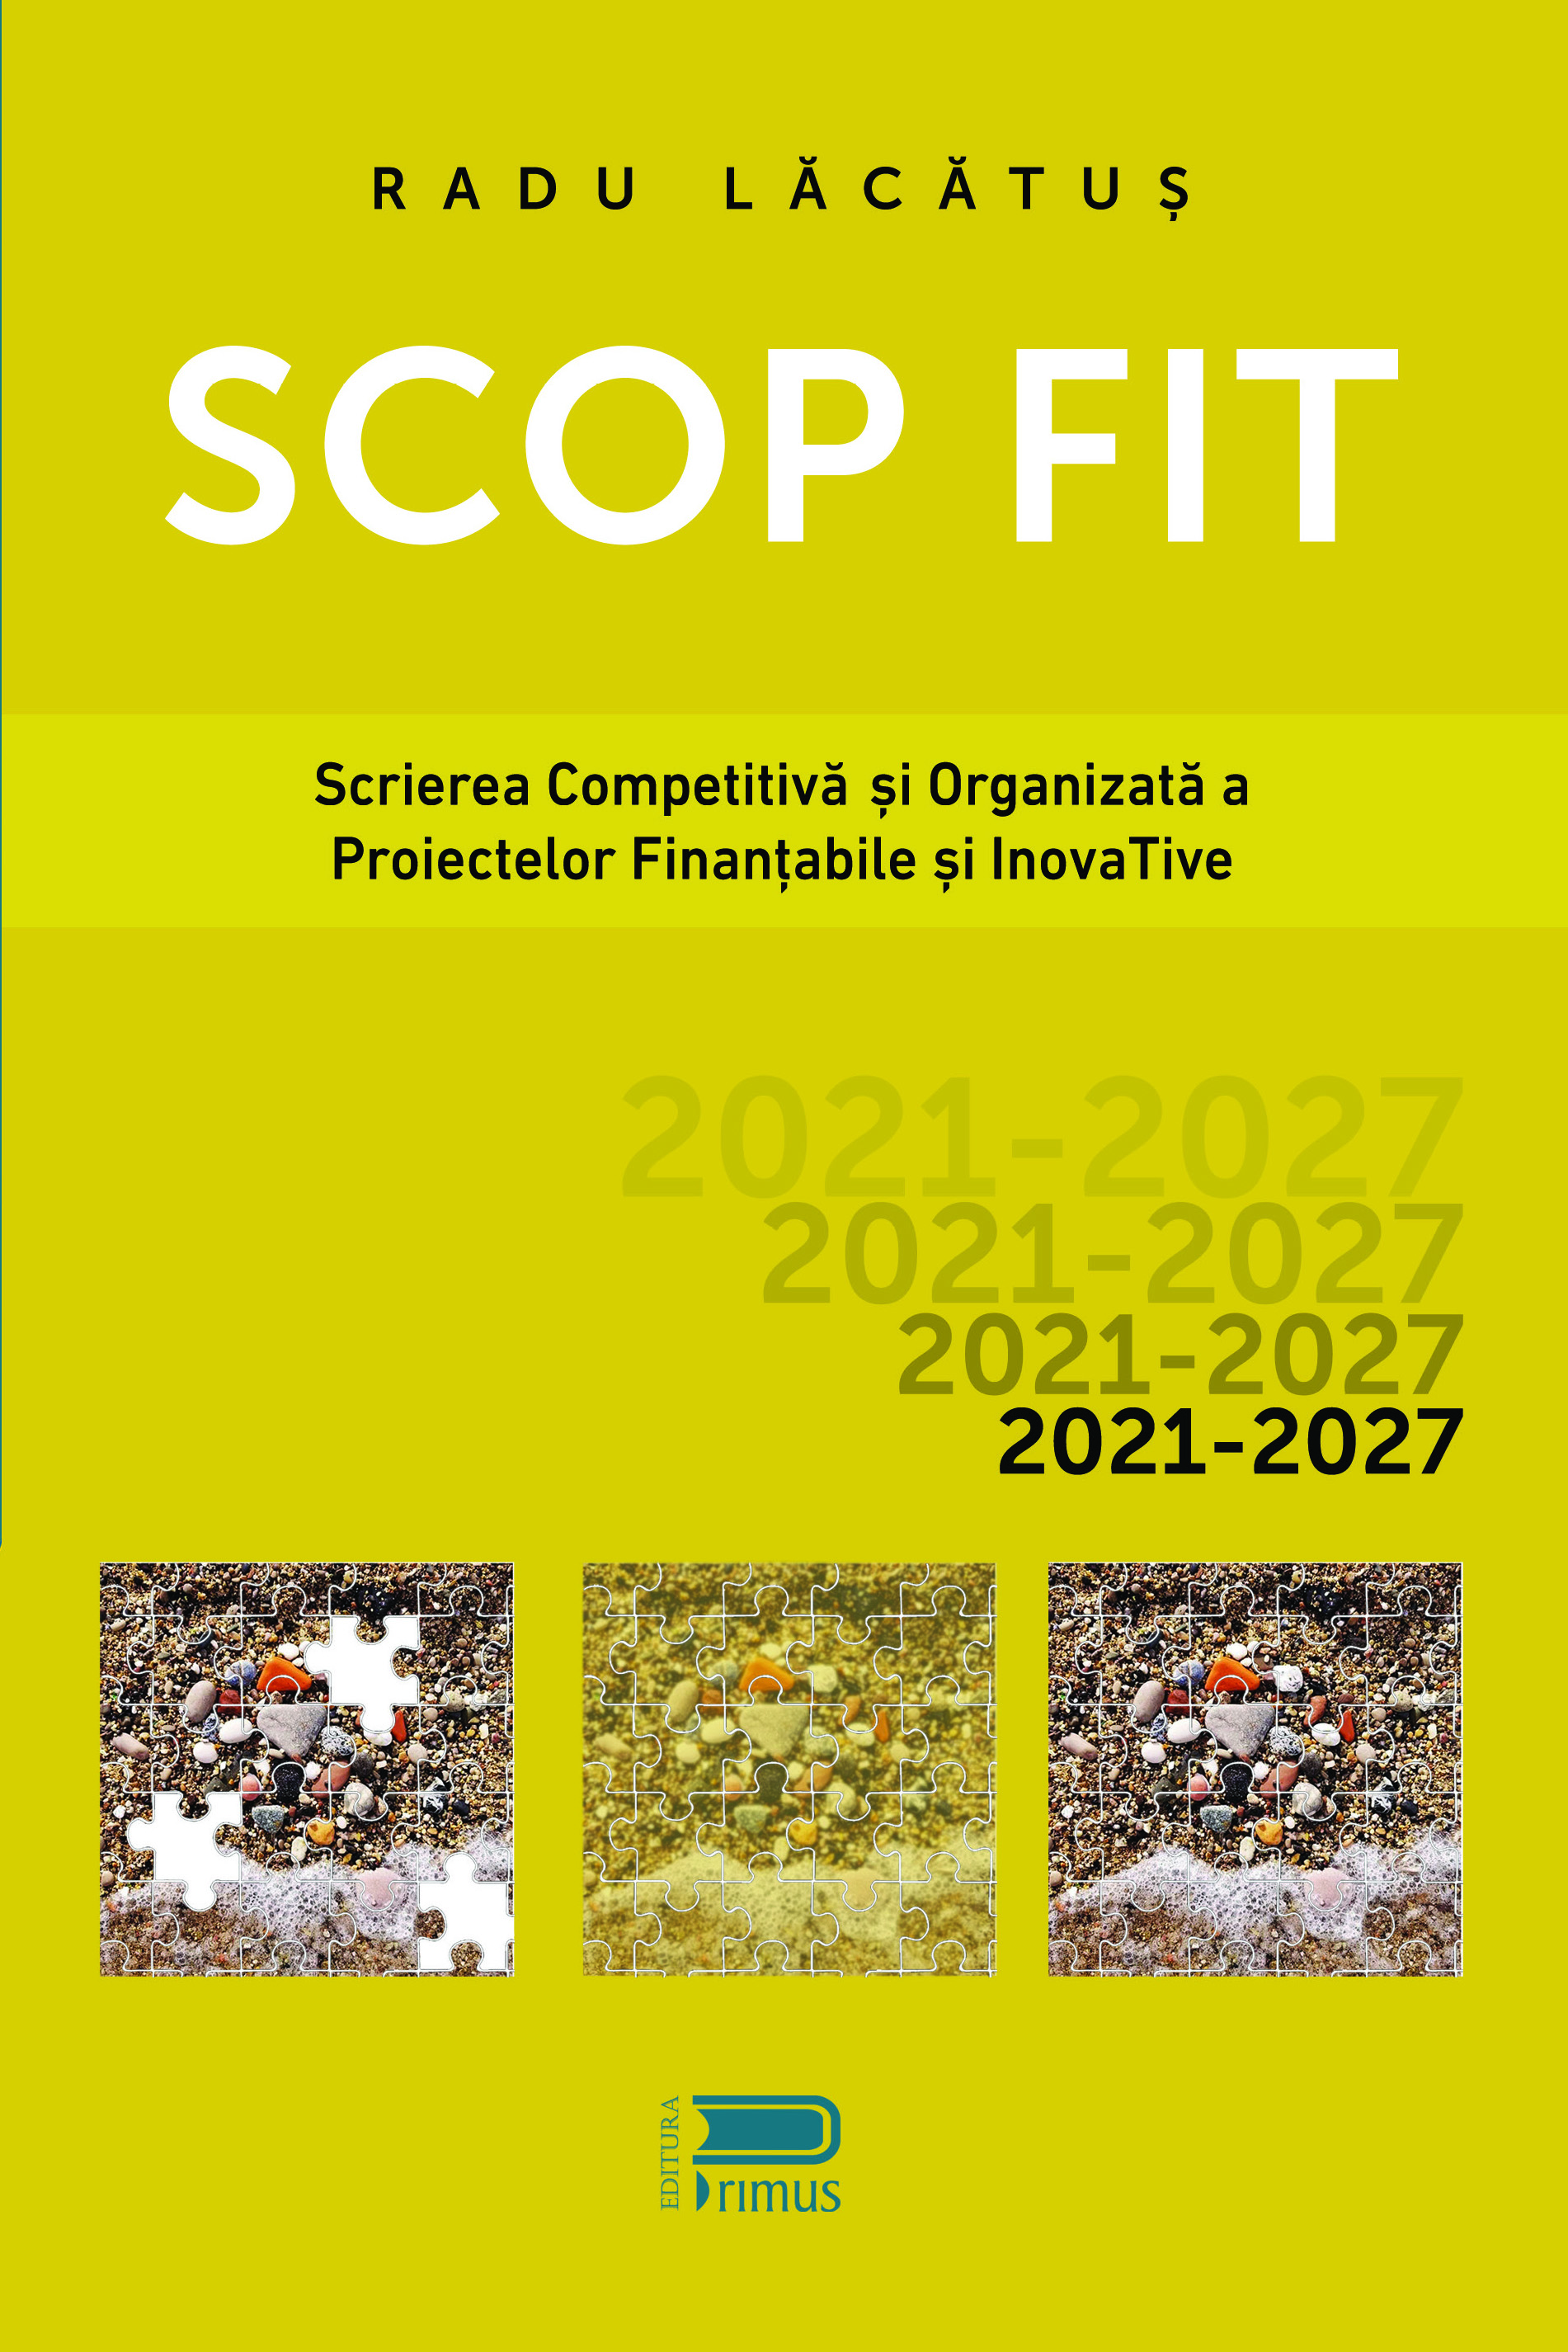 SCOP FIT: Scrierea competitiva si organizata a proiectelor finantabile si inovative | Radu Lacatus carturesti.ro poza noua